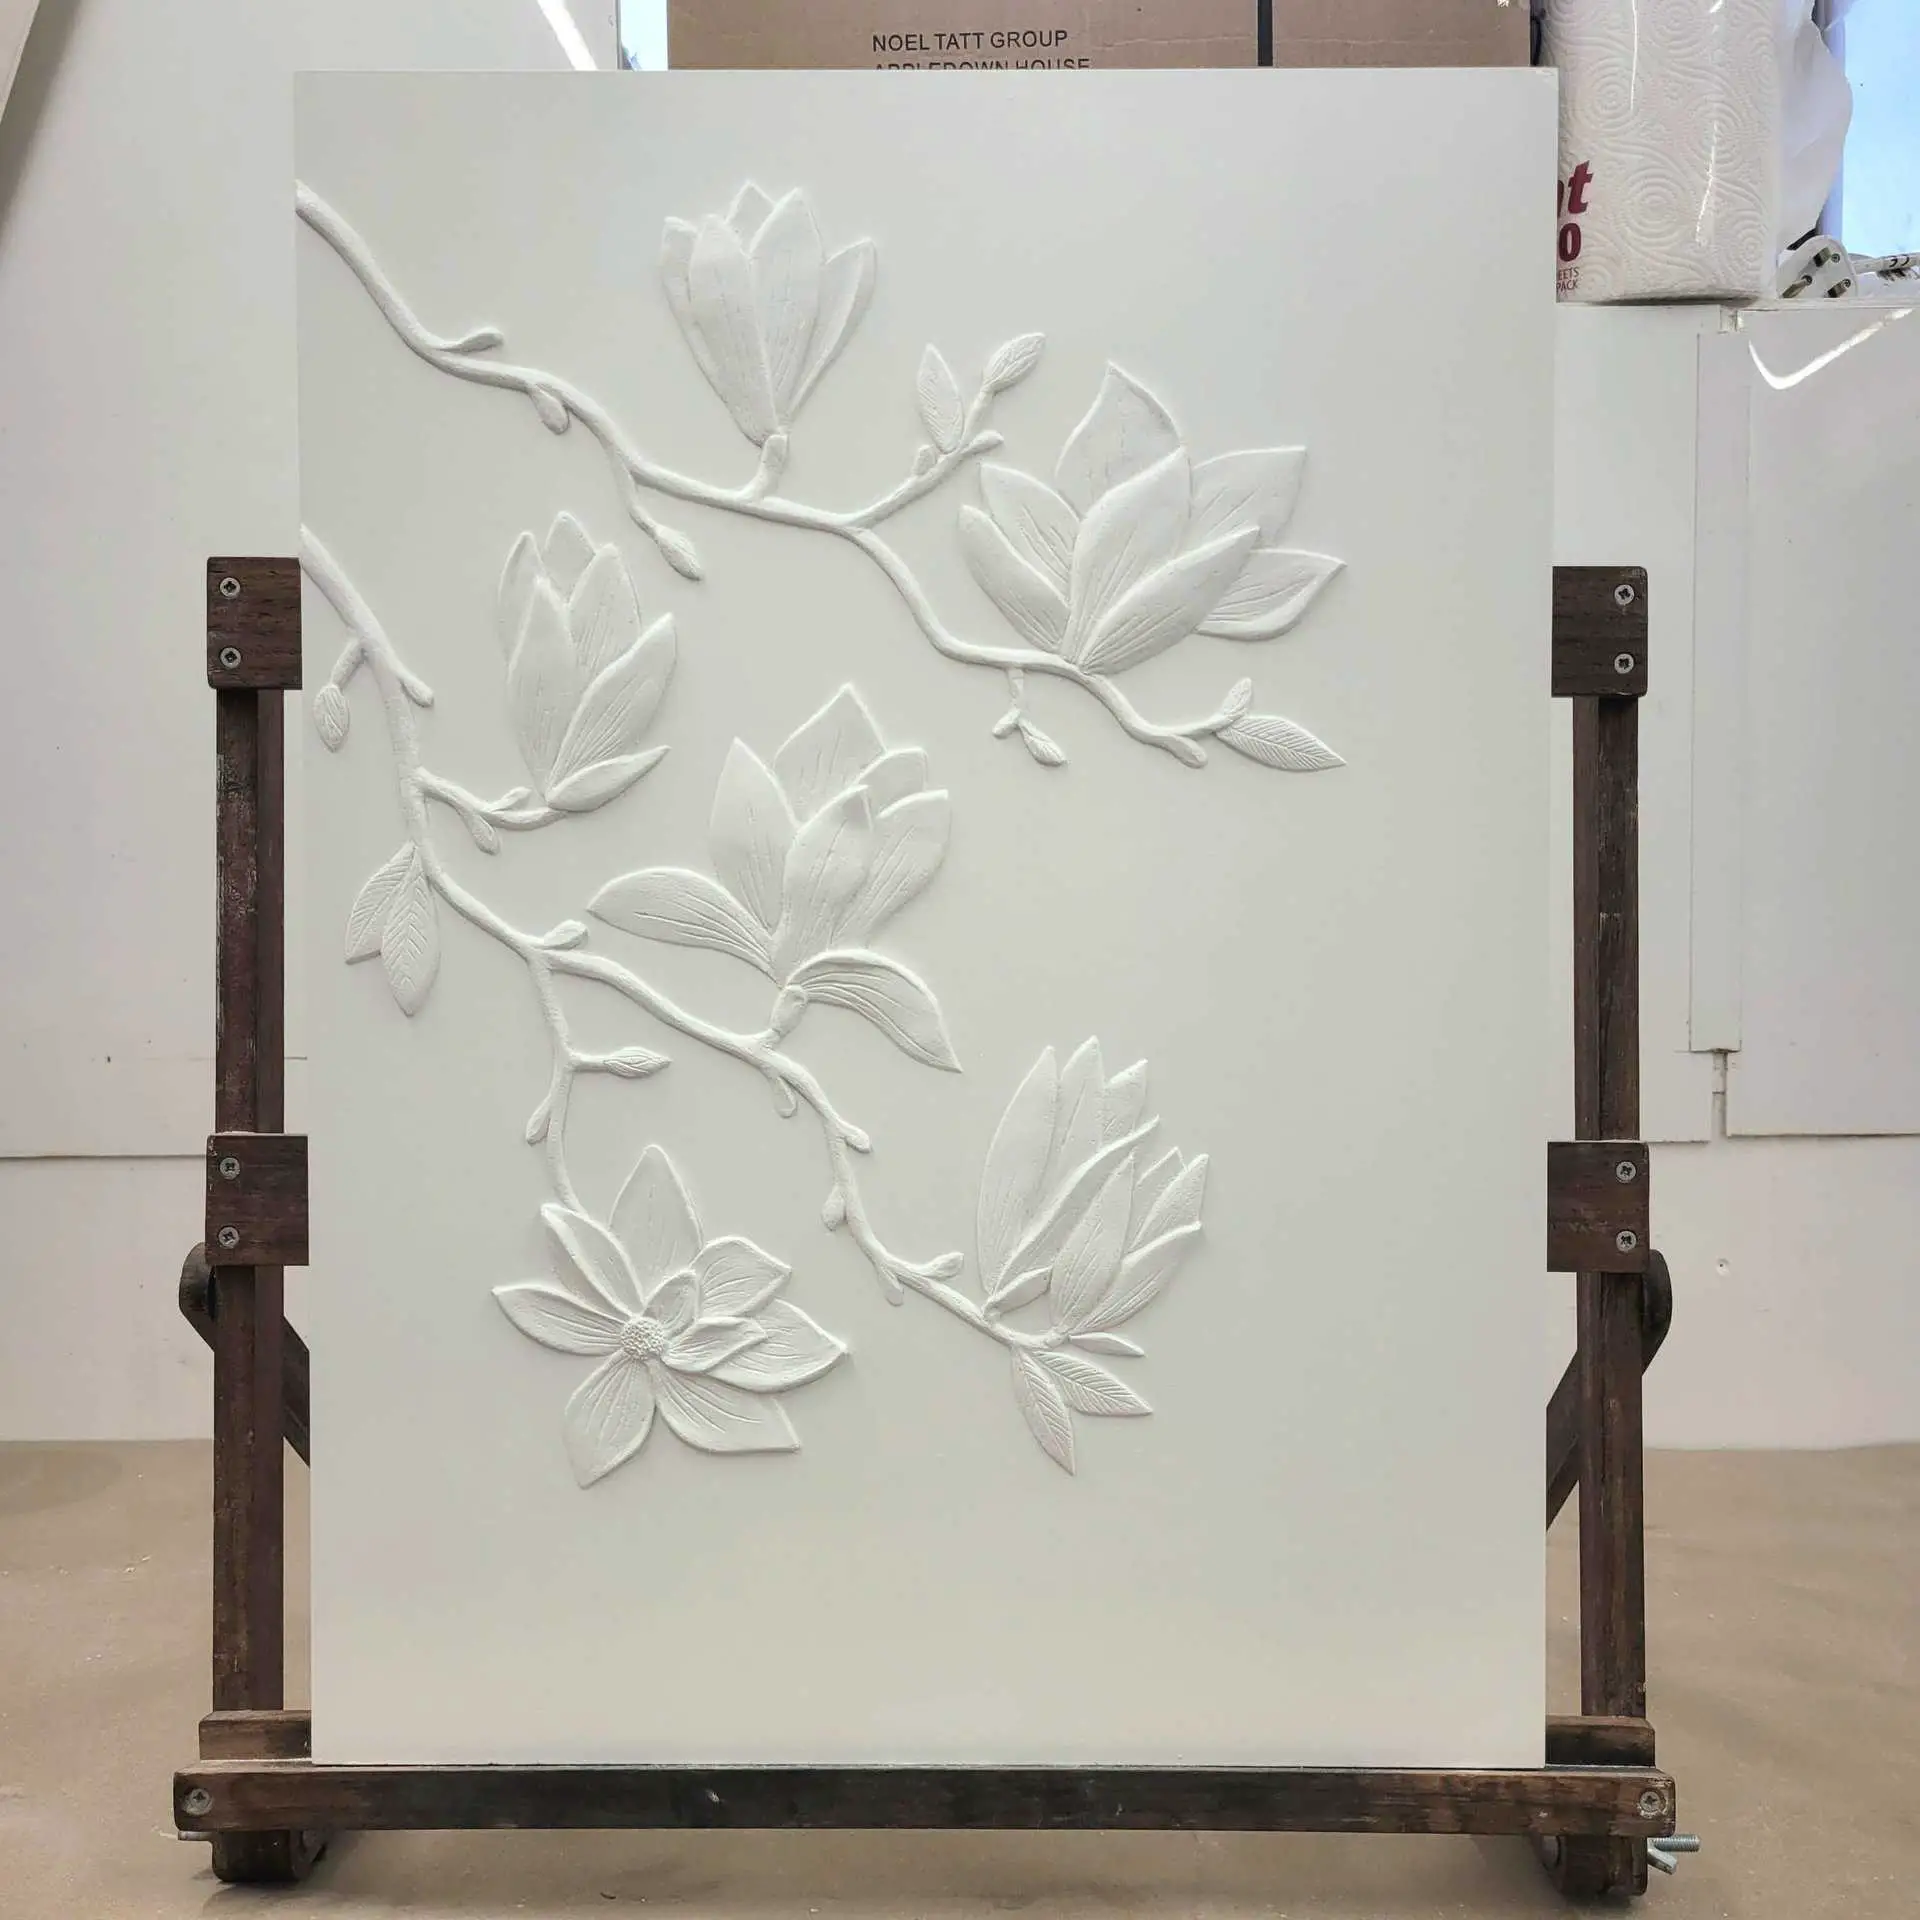 India Allin's magnolia plasterwork